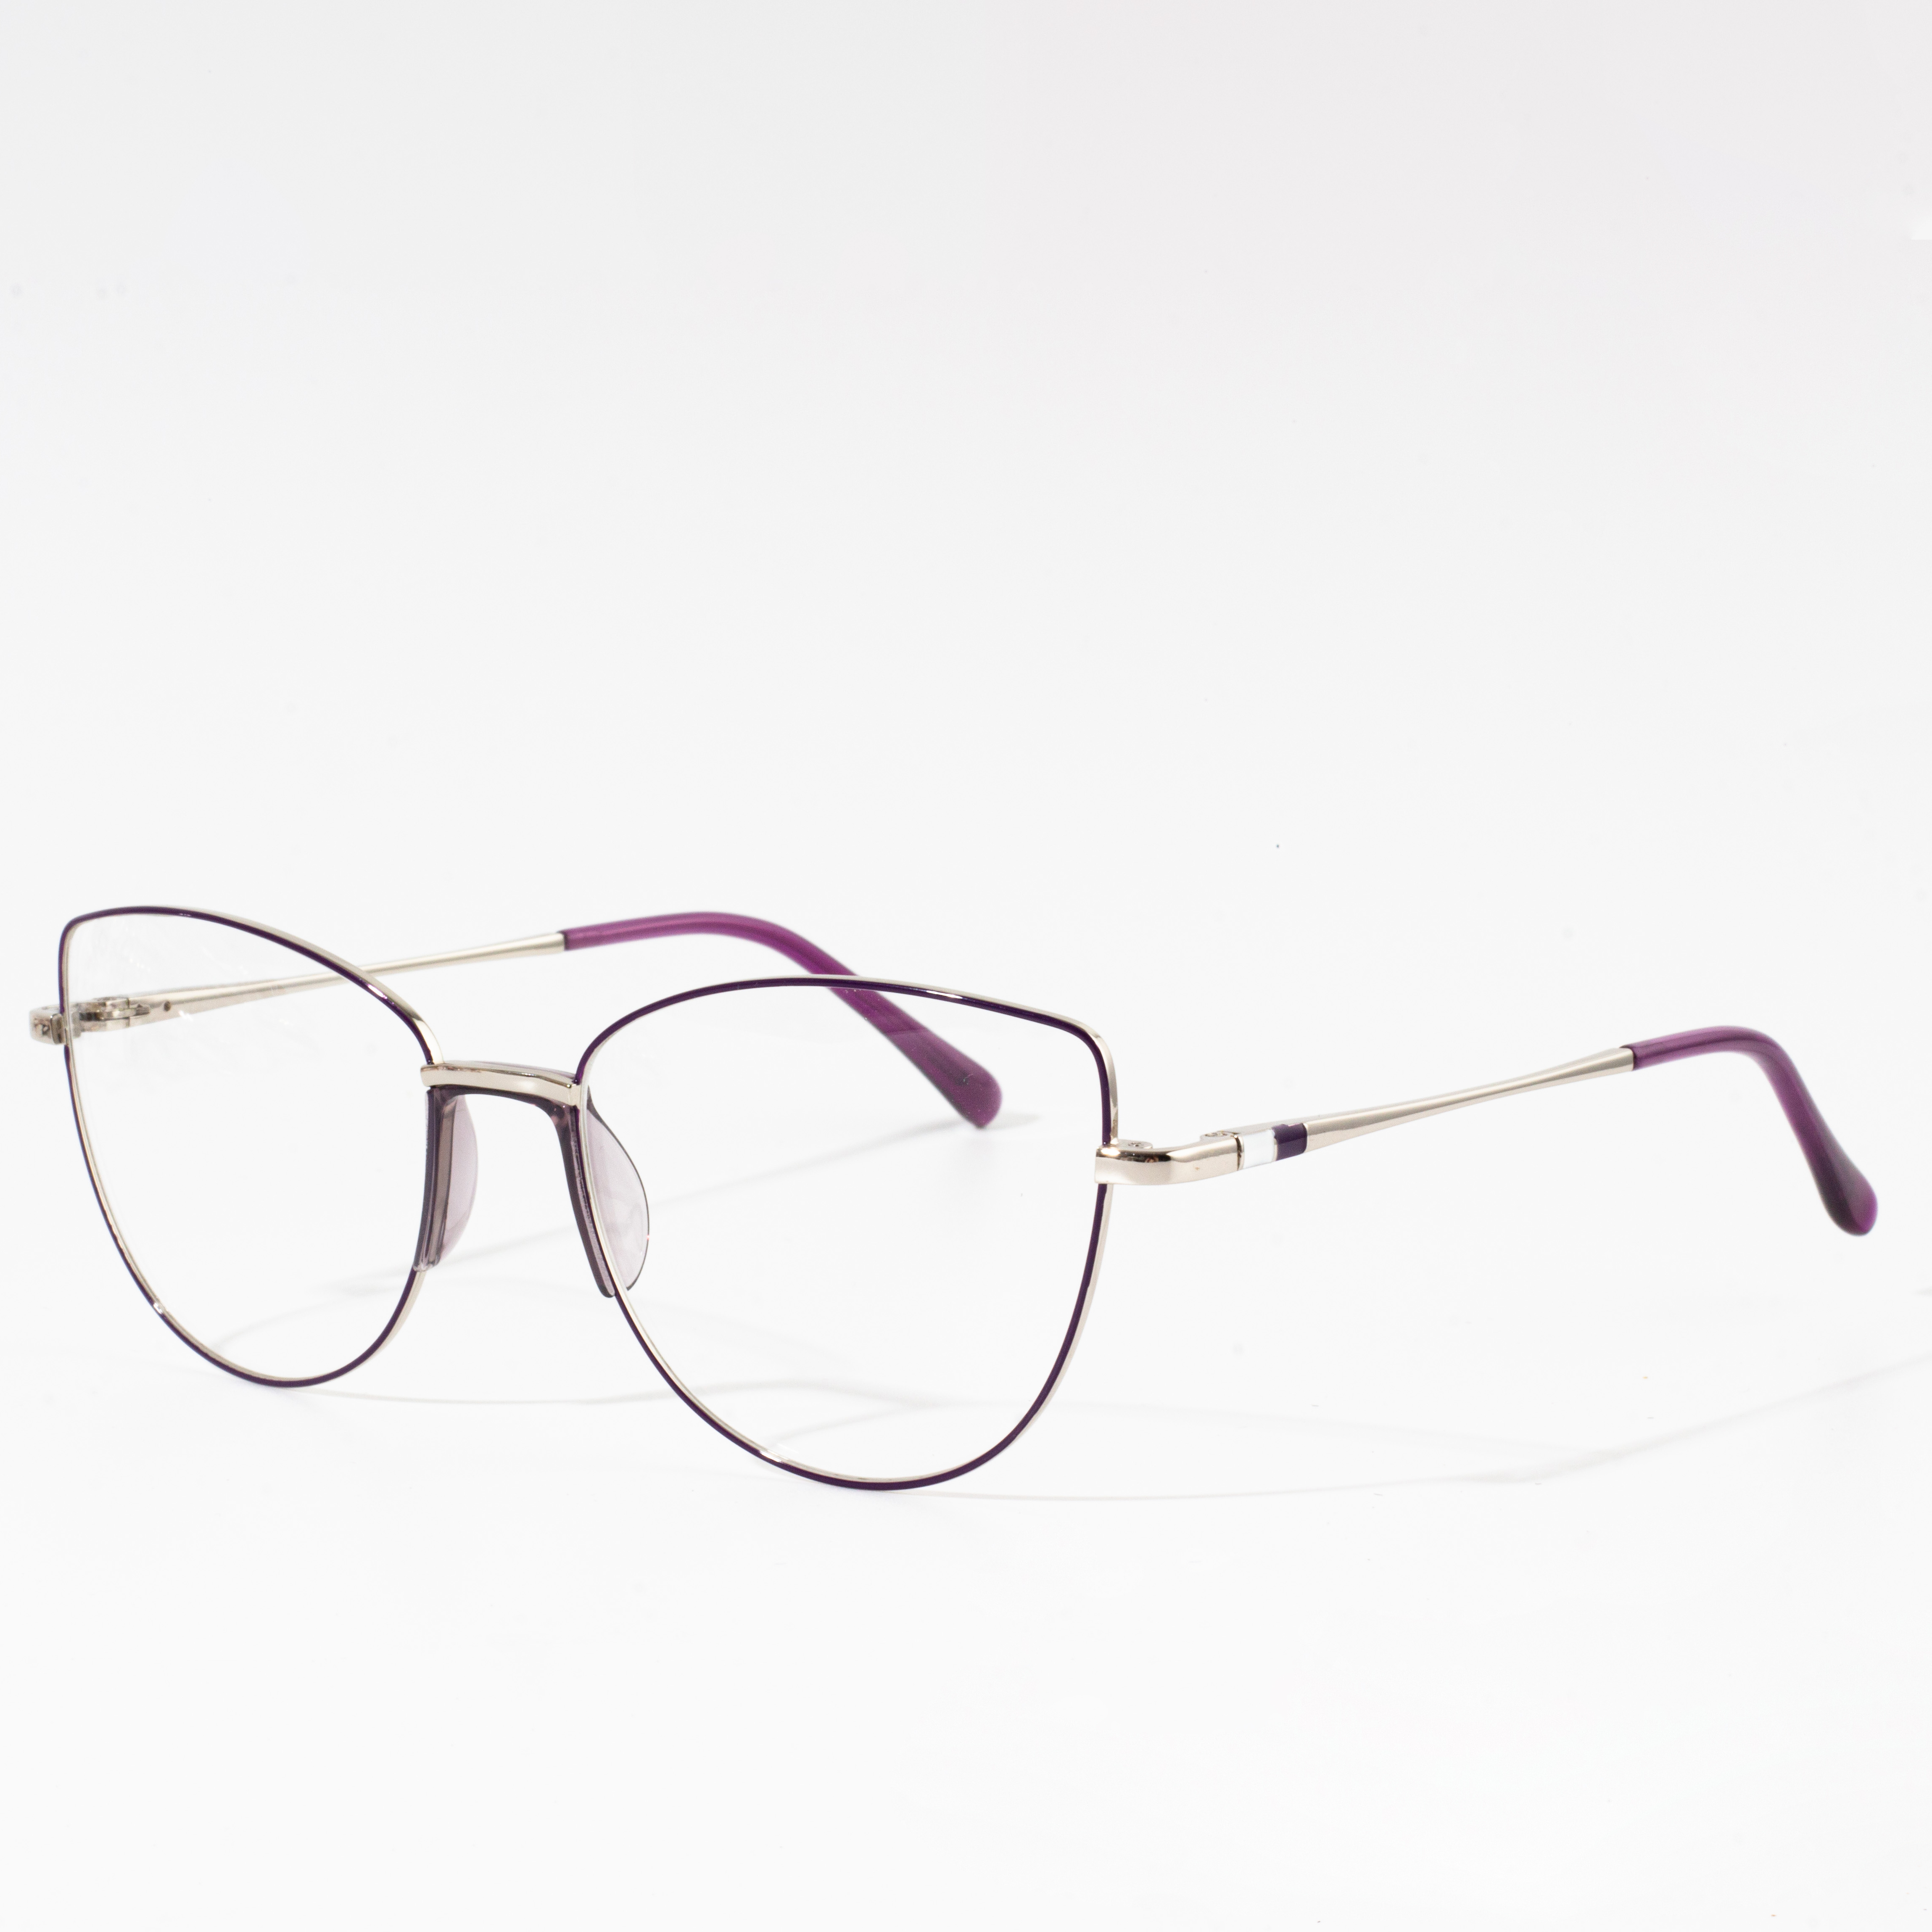 Round eyeglasses frames